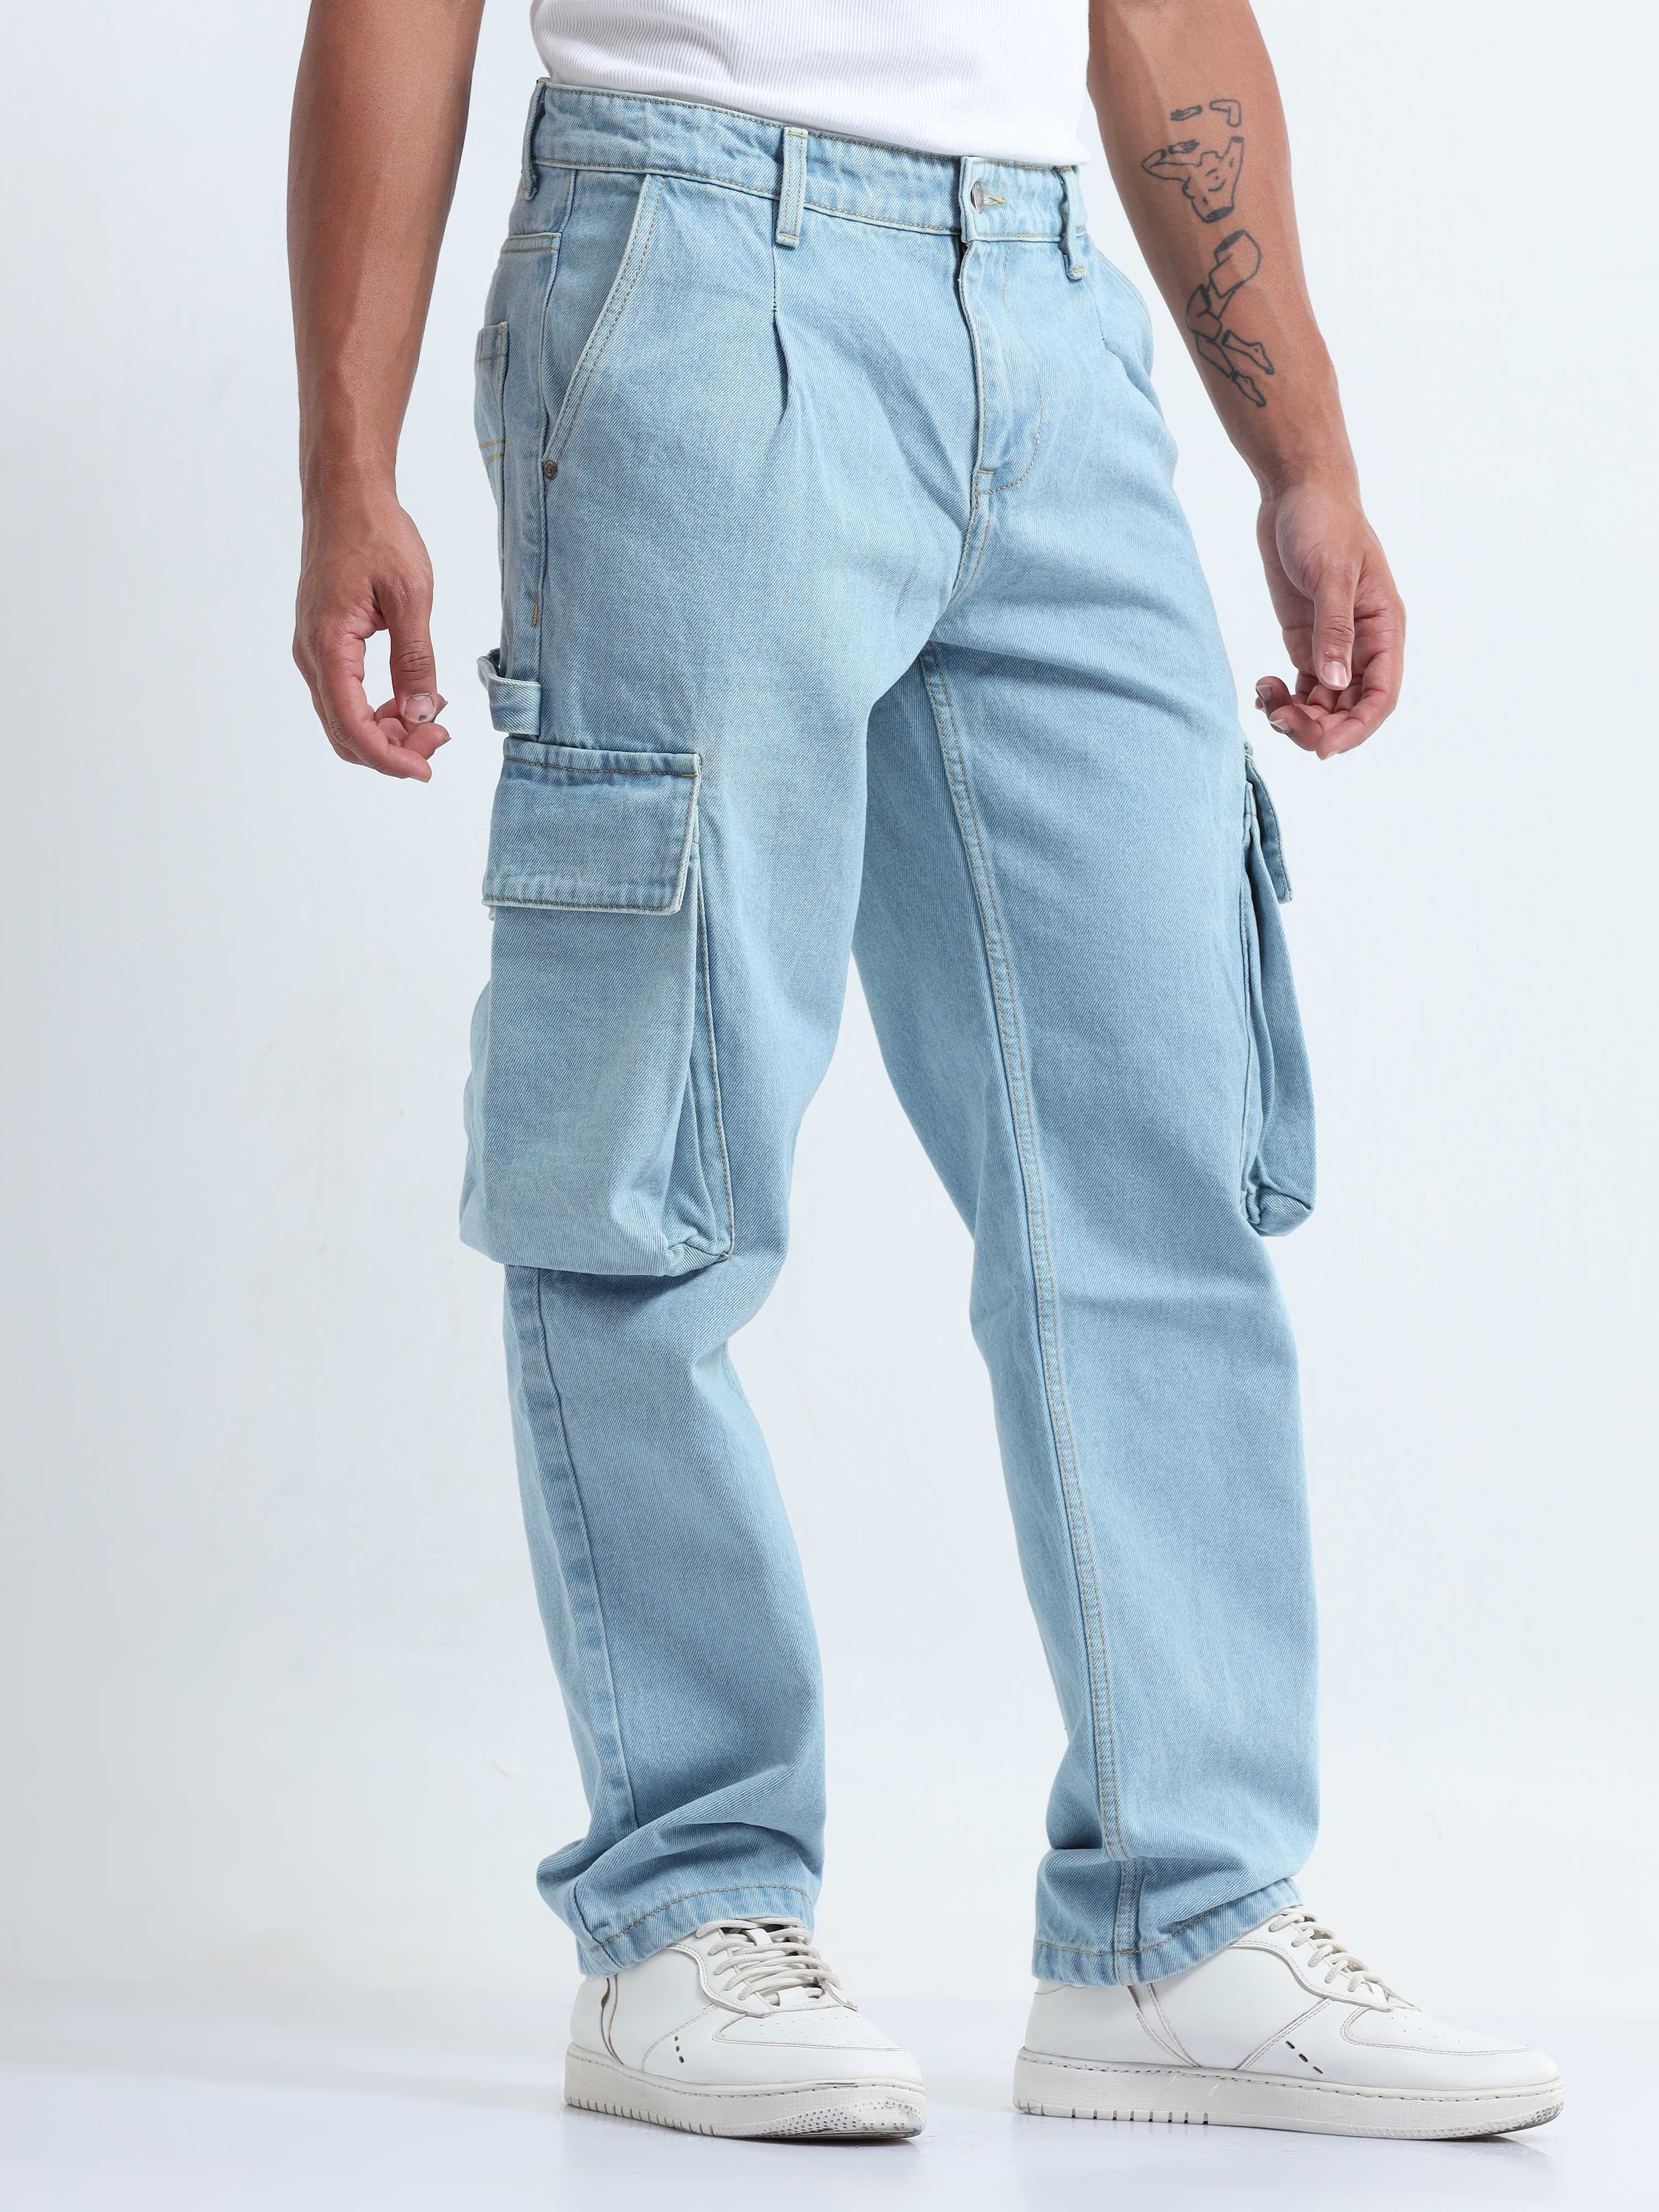 Rick Owens Drkshdw for Men SS24 Collection | Denim cargo pants, Cargo pants,  Rick owens drkshdw